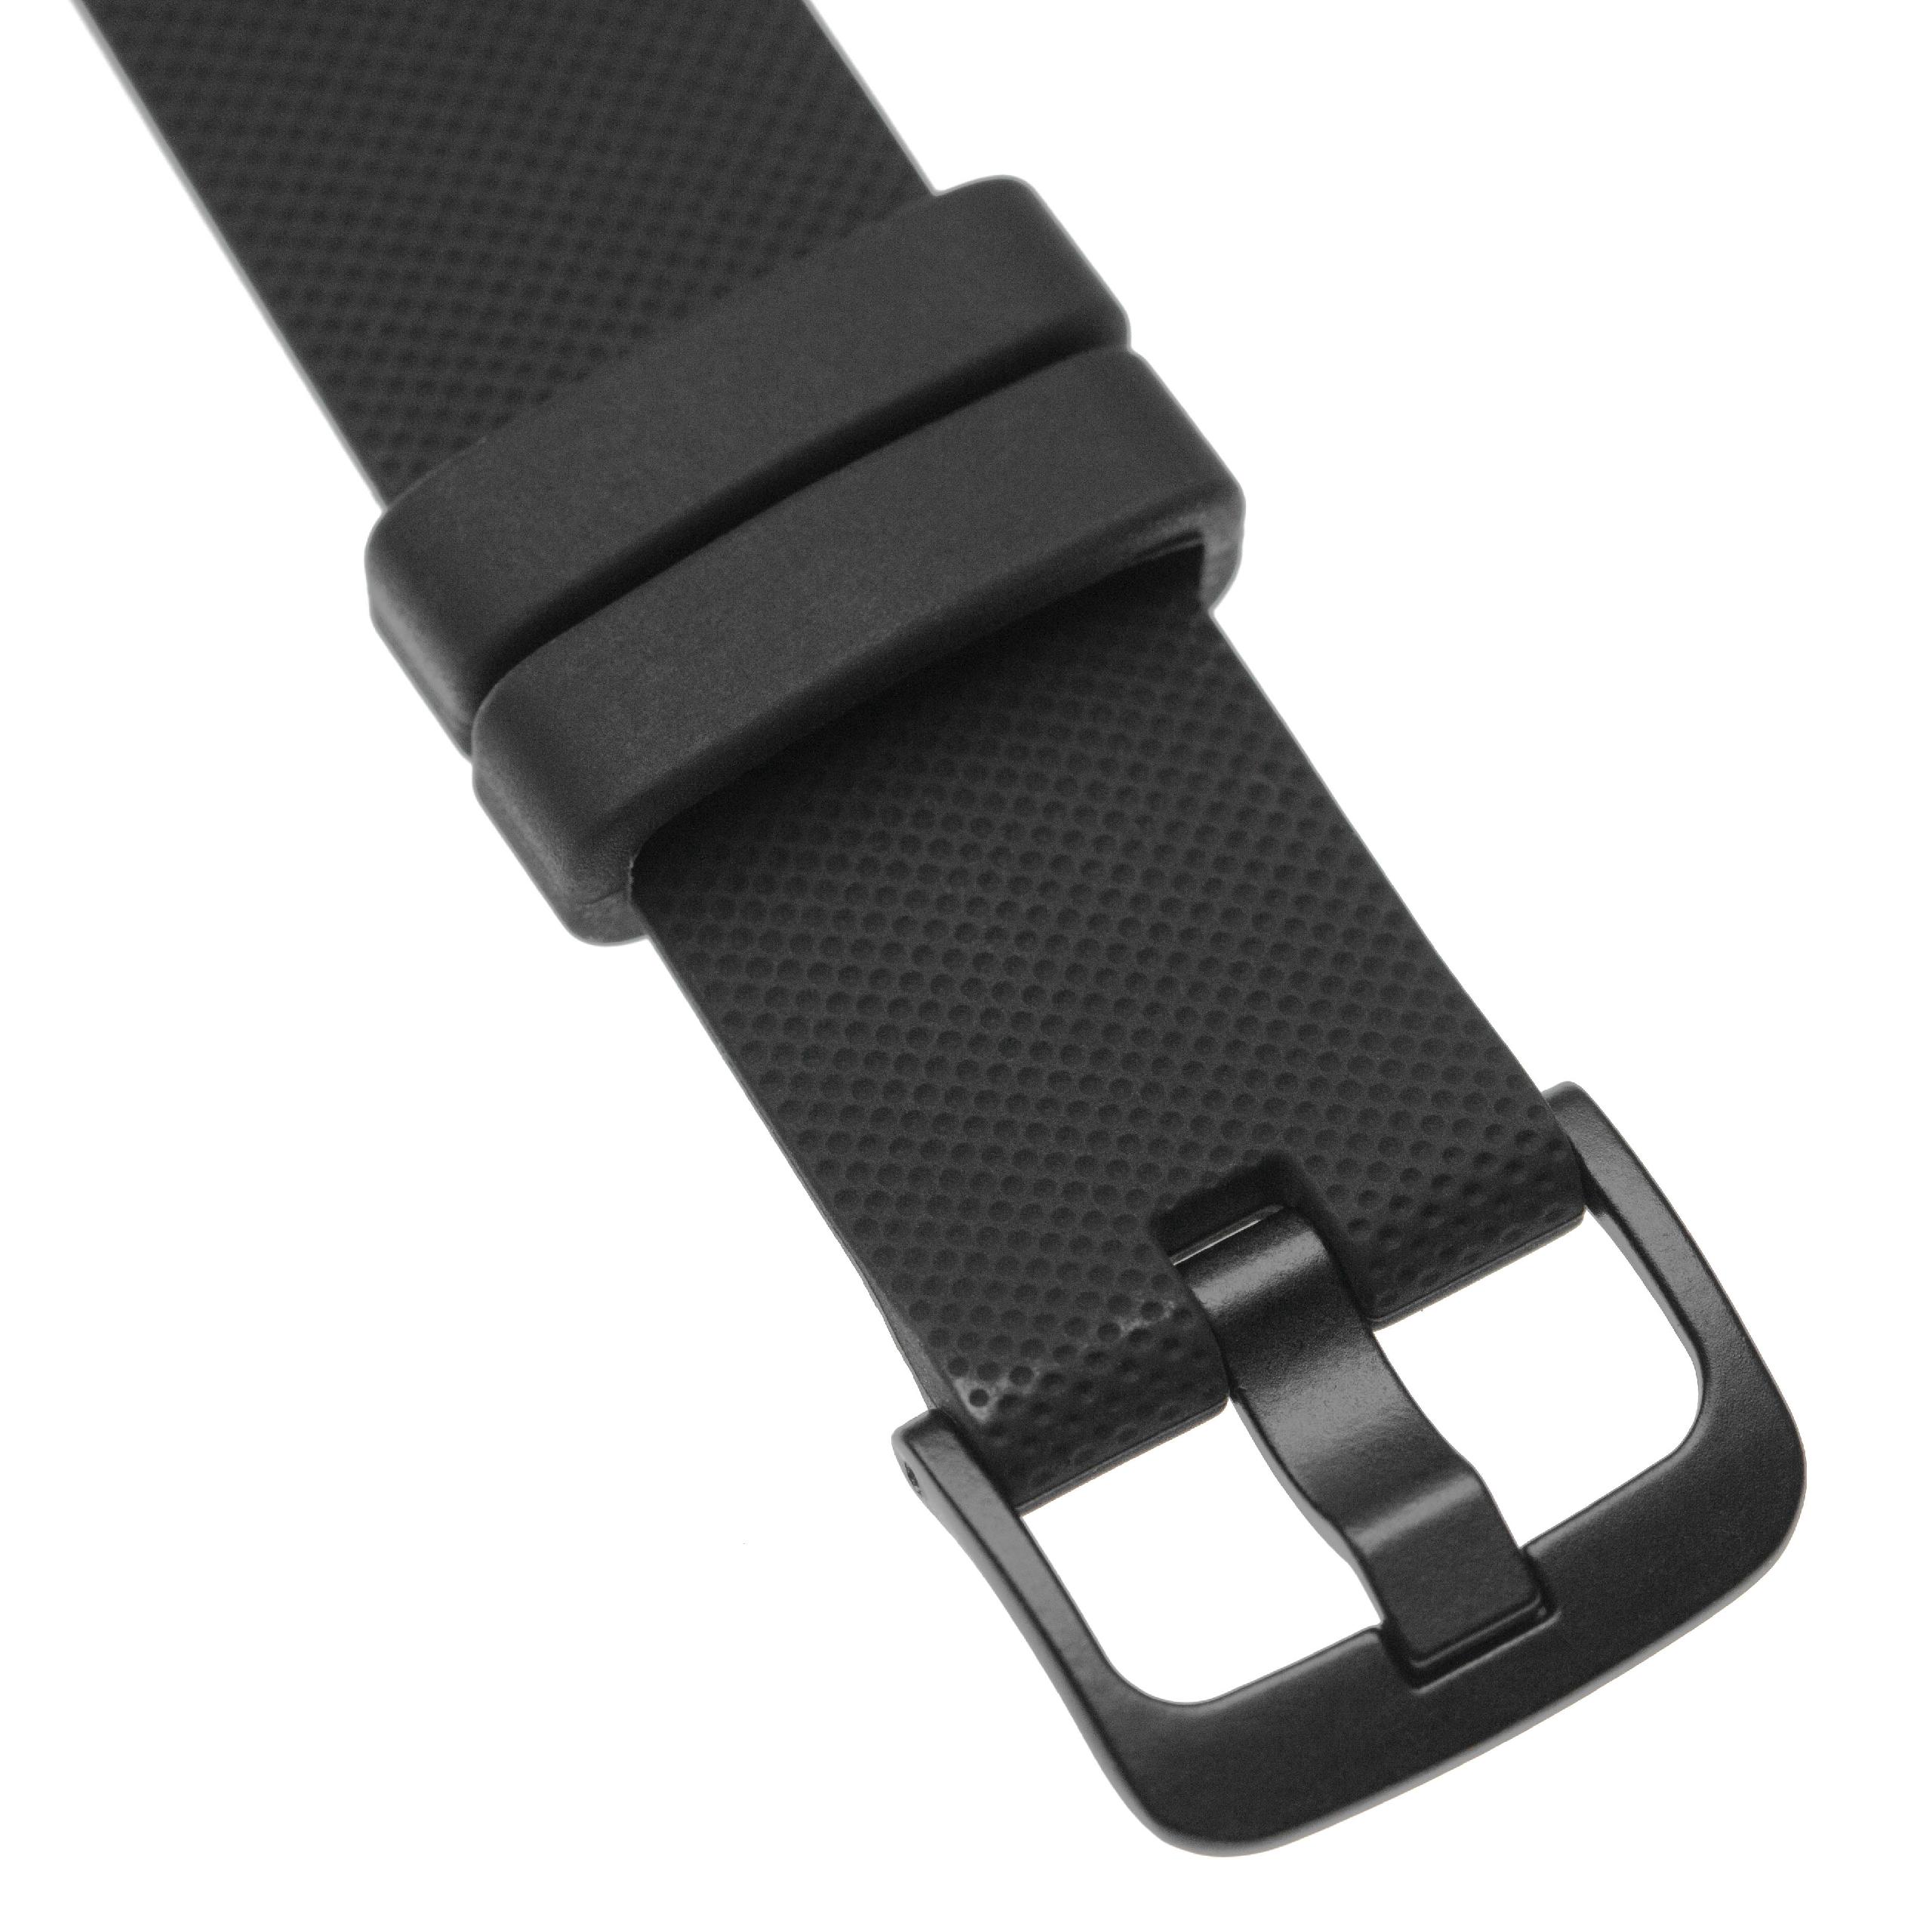 Bracelet pour montre intelligente Garmin Vivomove - 12,1 + 9,2 cm de long, 20mm de large, silicone, noir